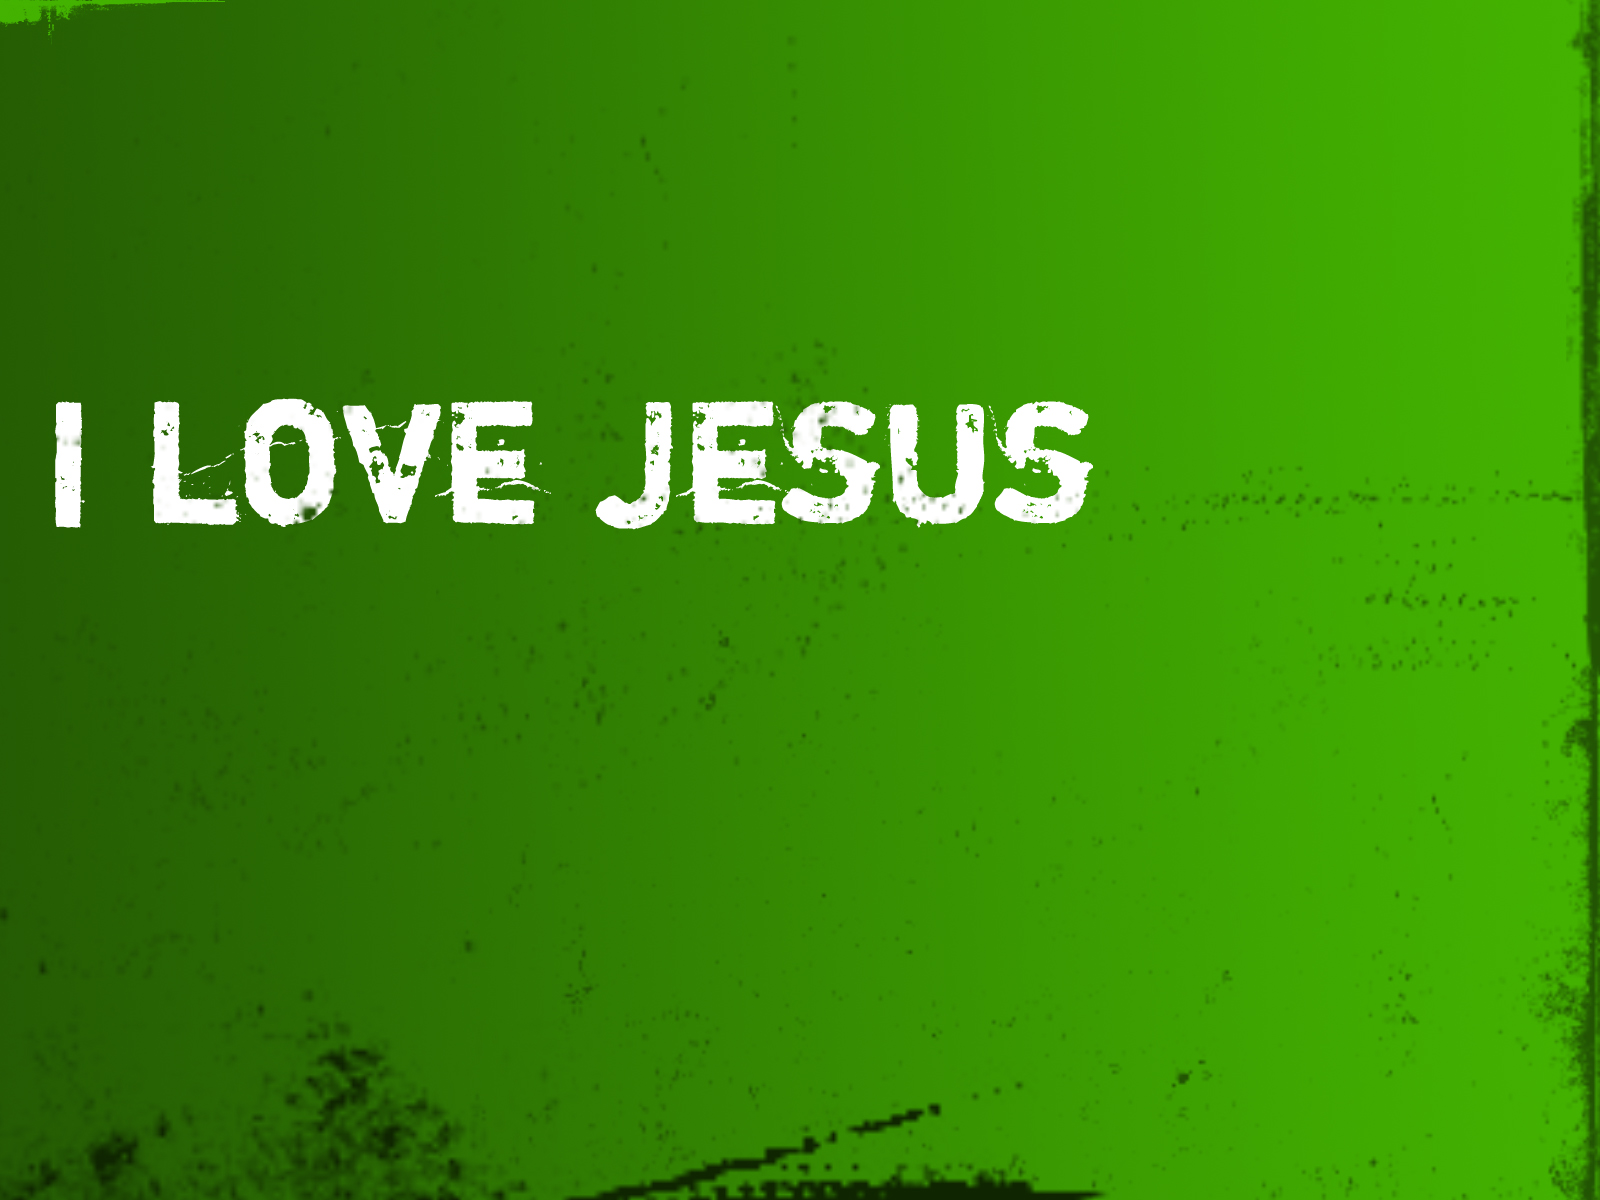 Jesus Christ Desktop Background For Christians